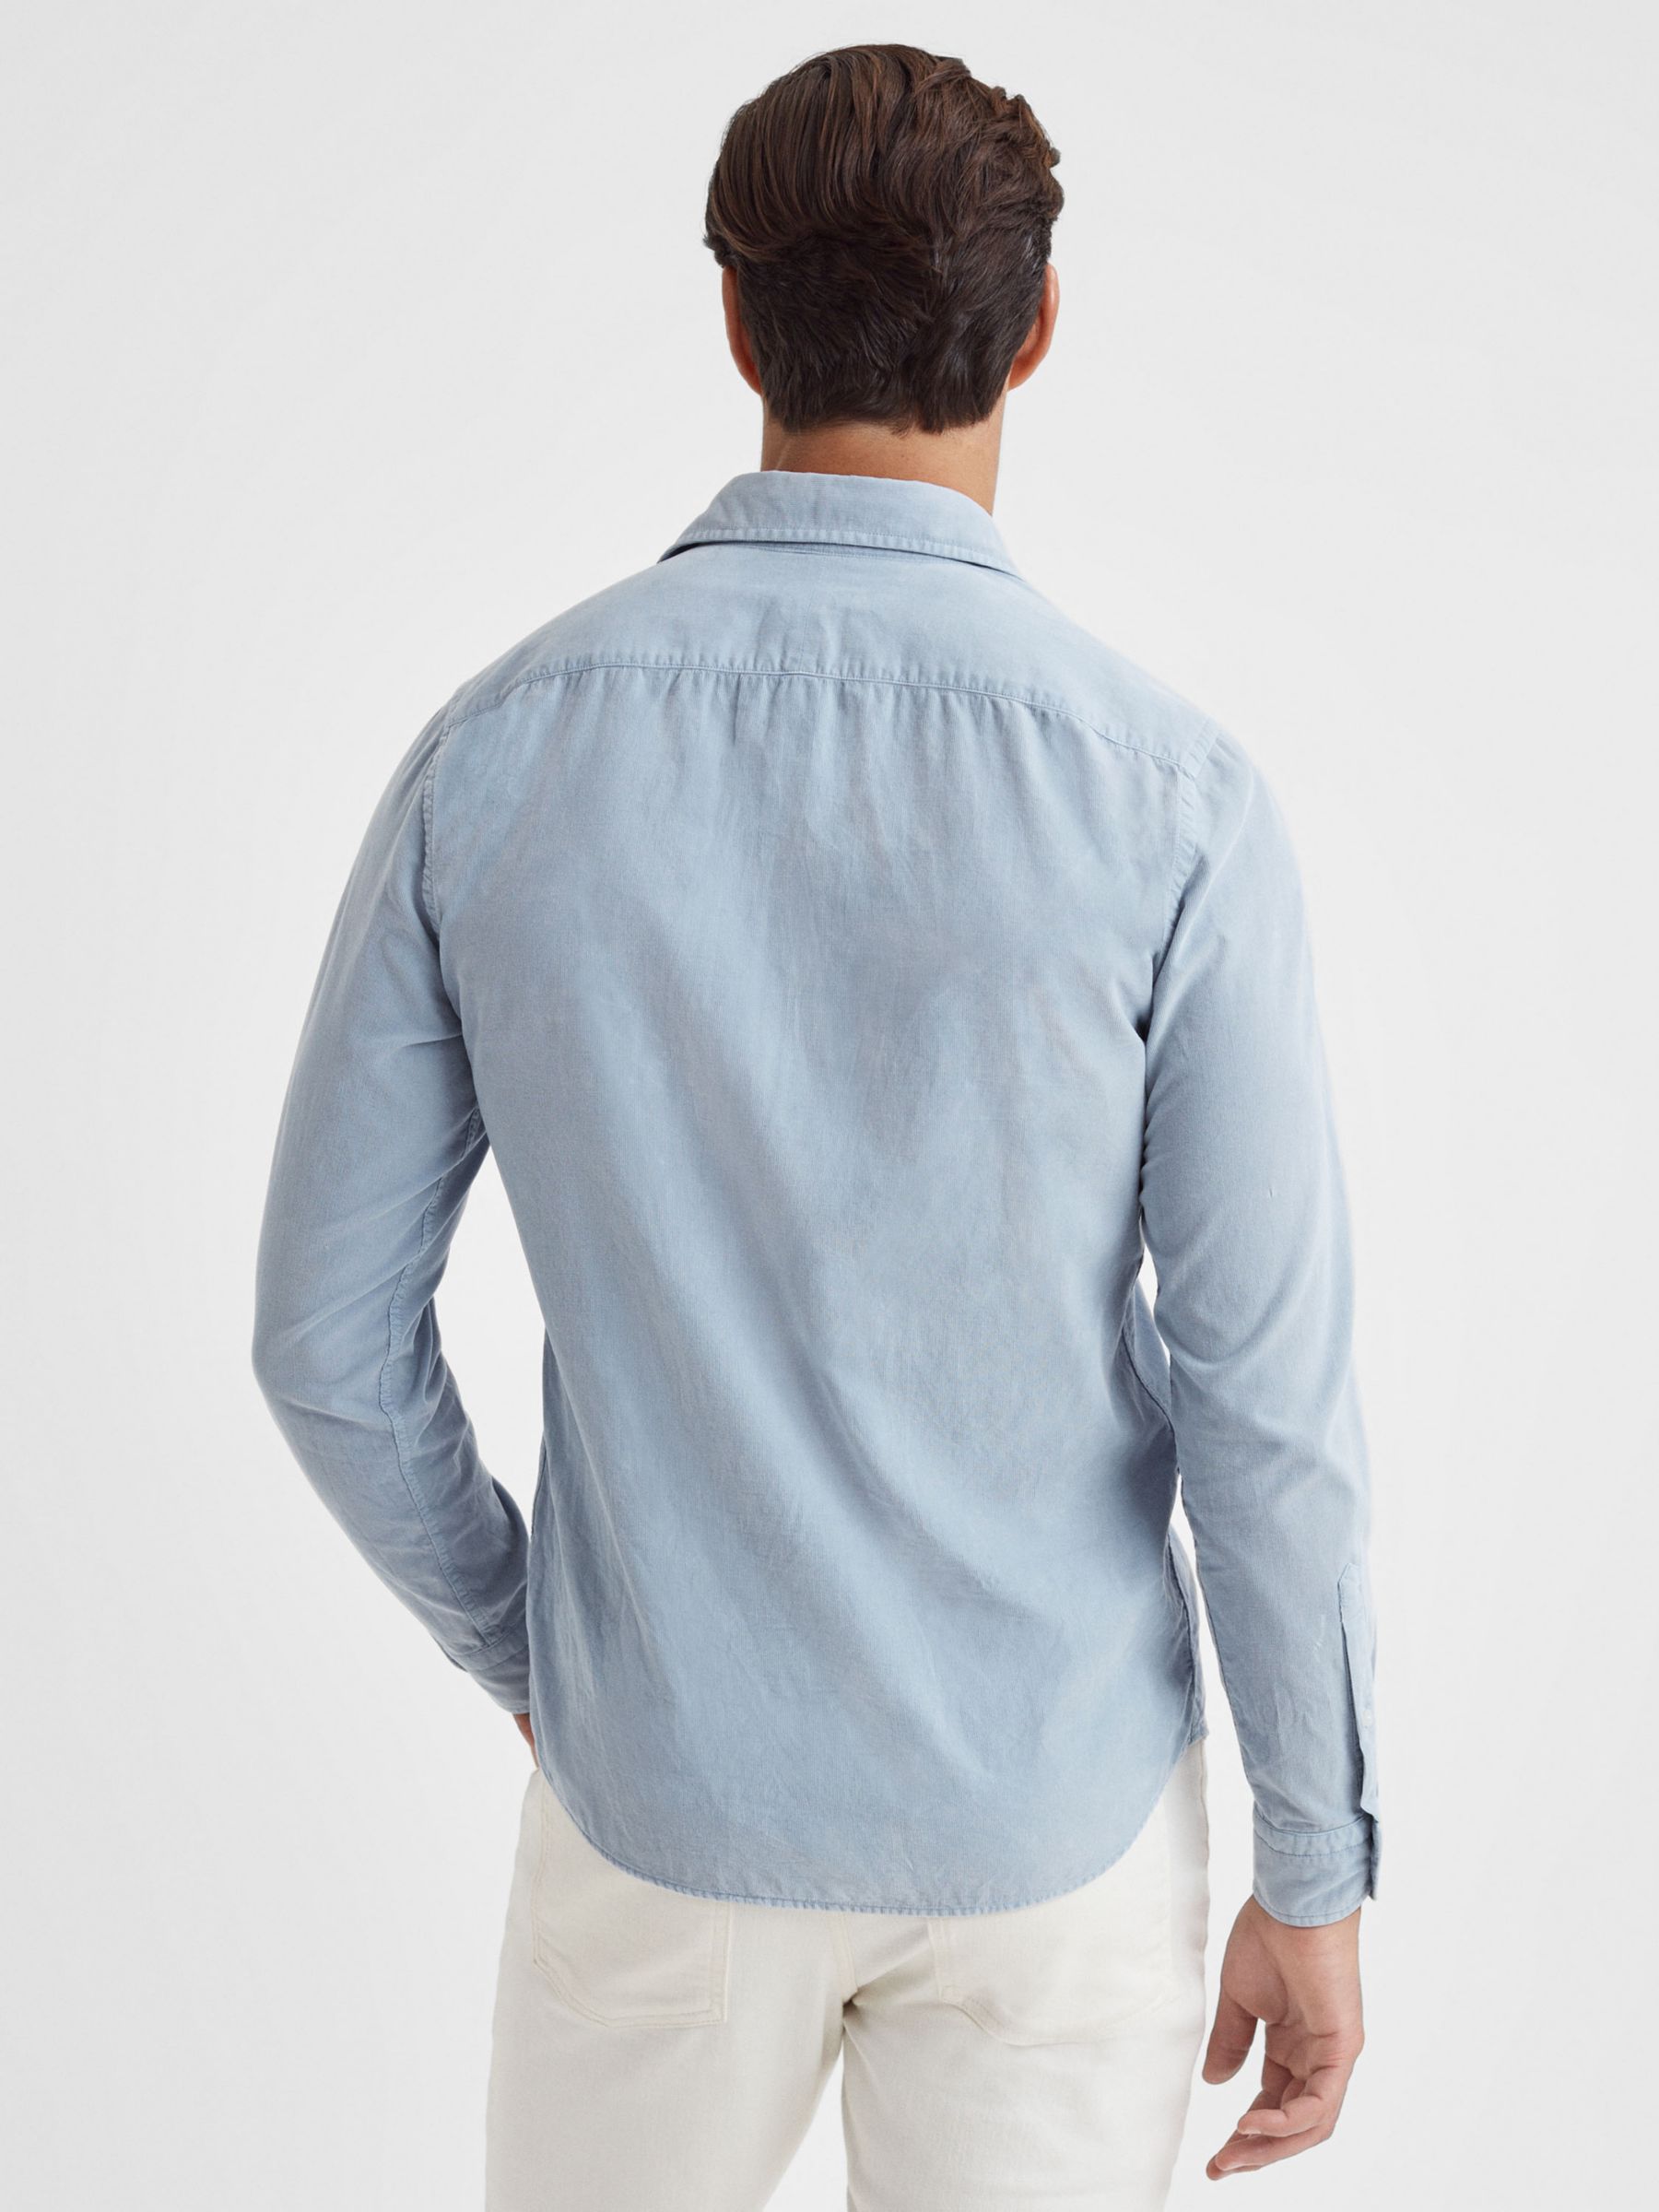 Reiss Vincy Long Sleeve Cutaway Collar Shirt, Soft Blue, XS